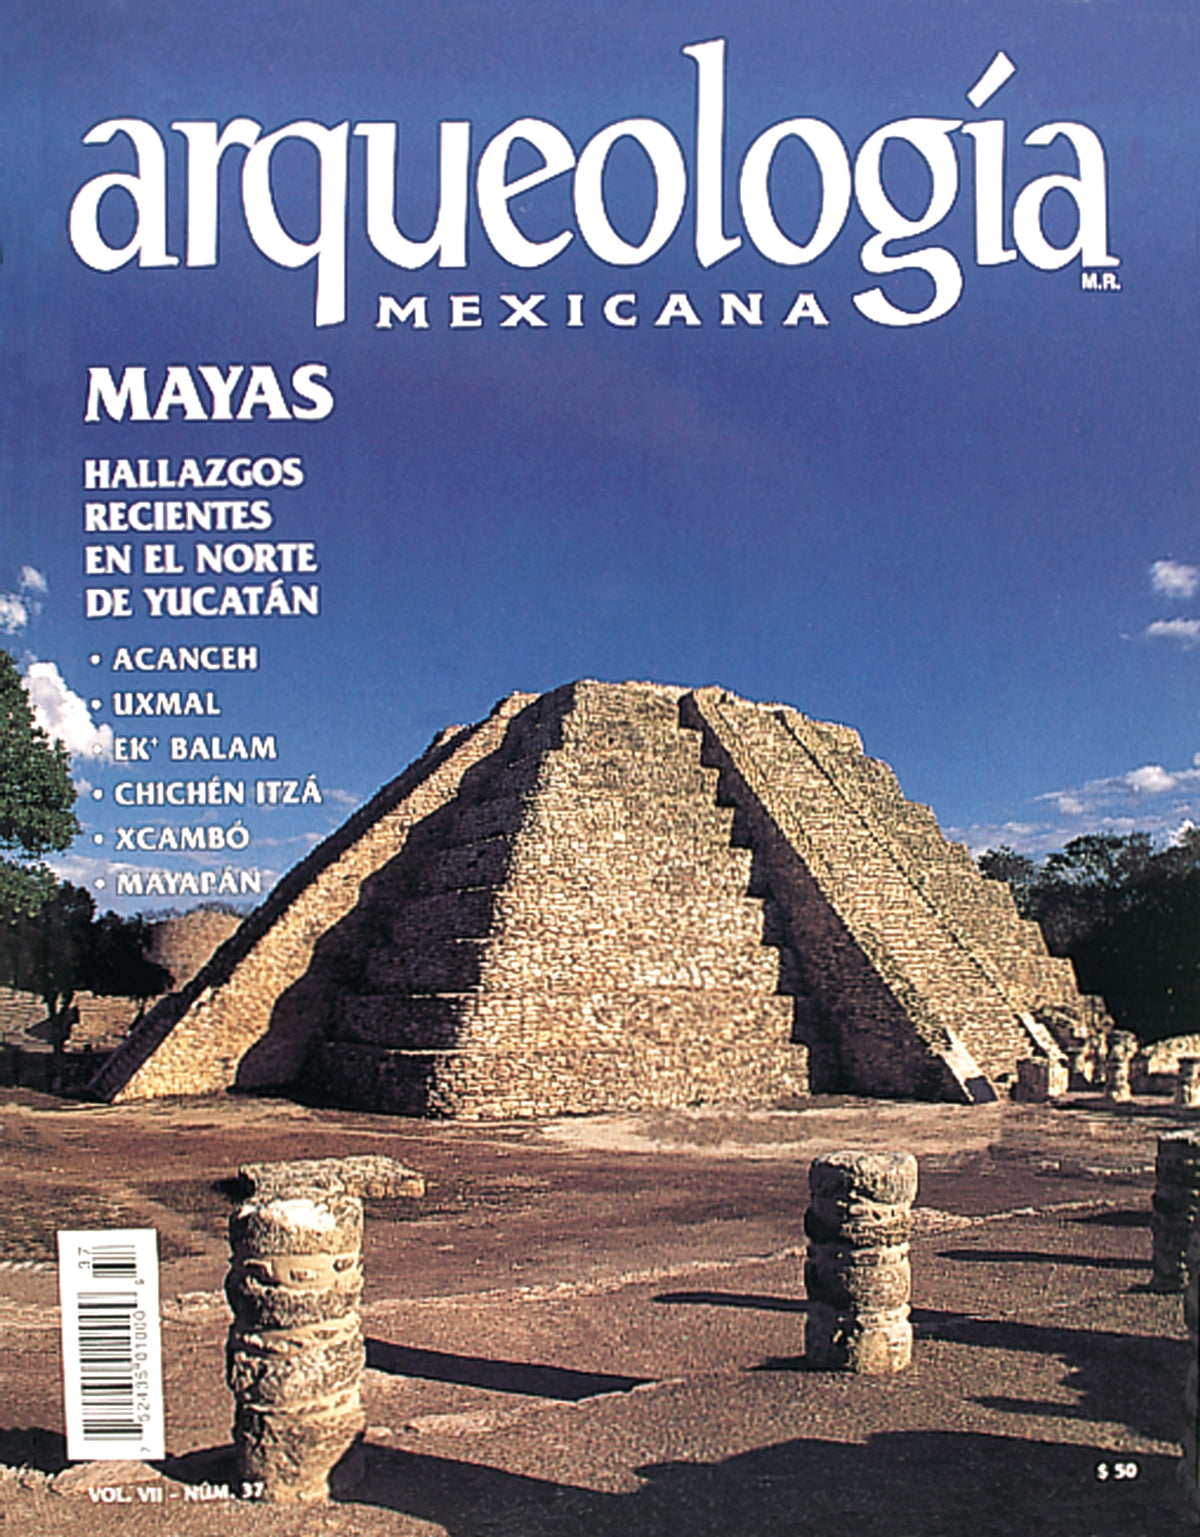 Mayas. Hallazgos recientes en el norte de Yucatán